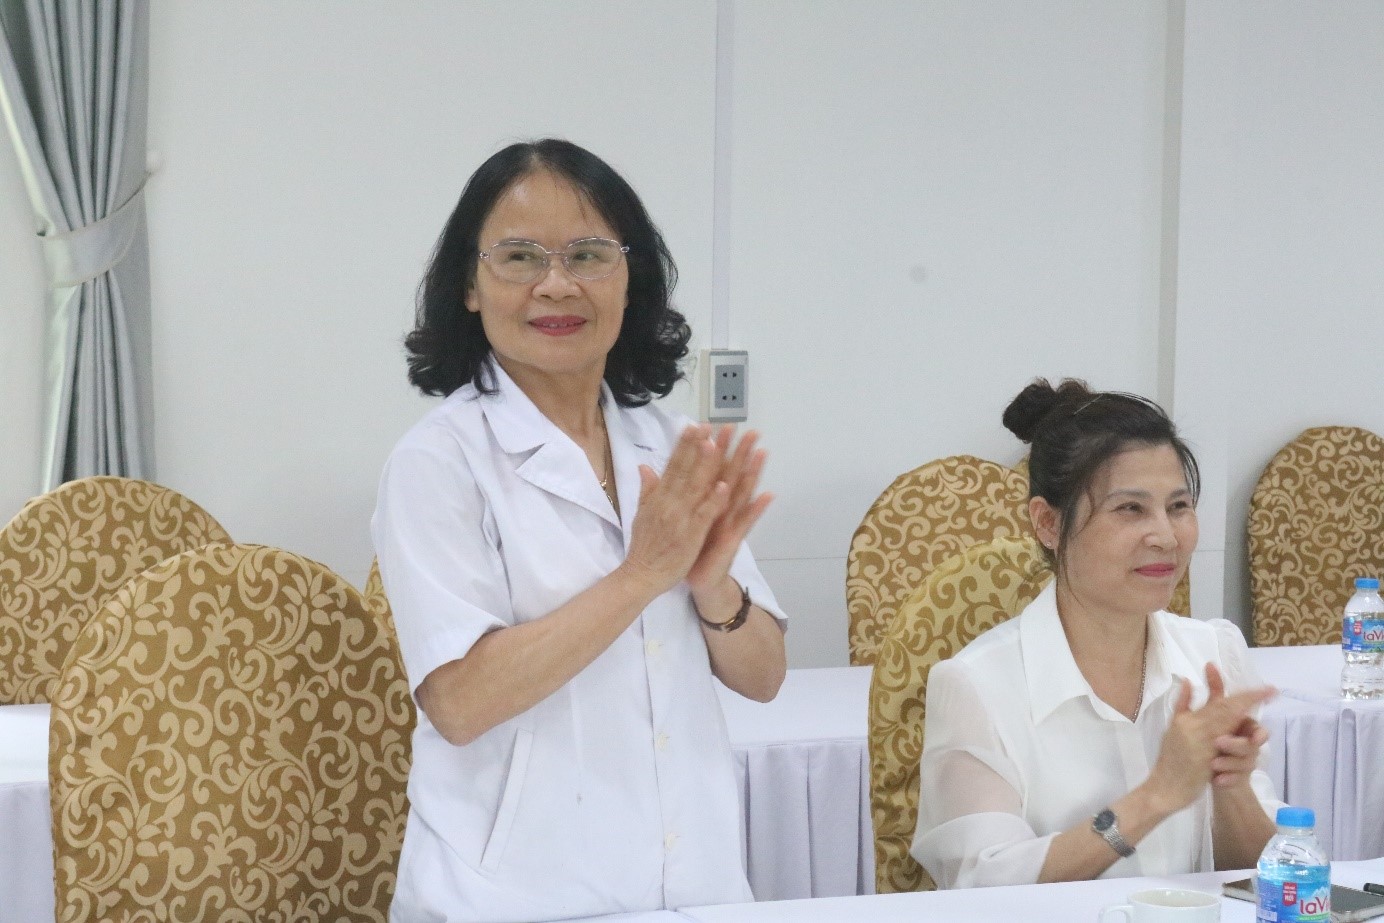 BS. Triệu Thị Tâm – Nguyên Trưởng ban chăm sóc sức khỏe cán bổ tỉnh ủy Thái Nguyên, Trưởng phòng khám nội tổng hợp 538.